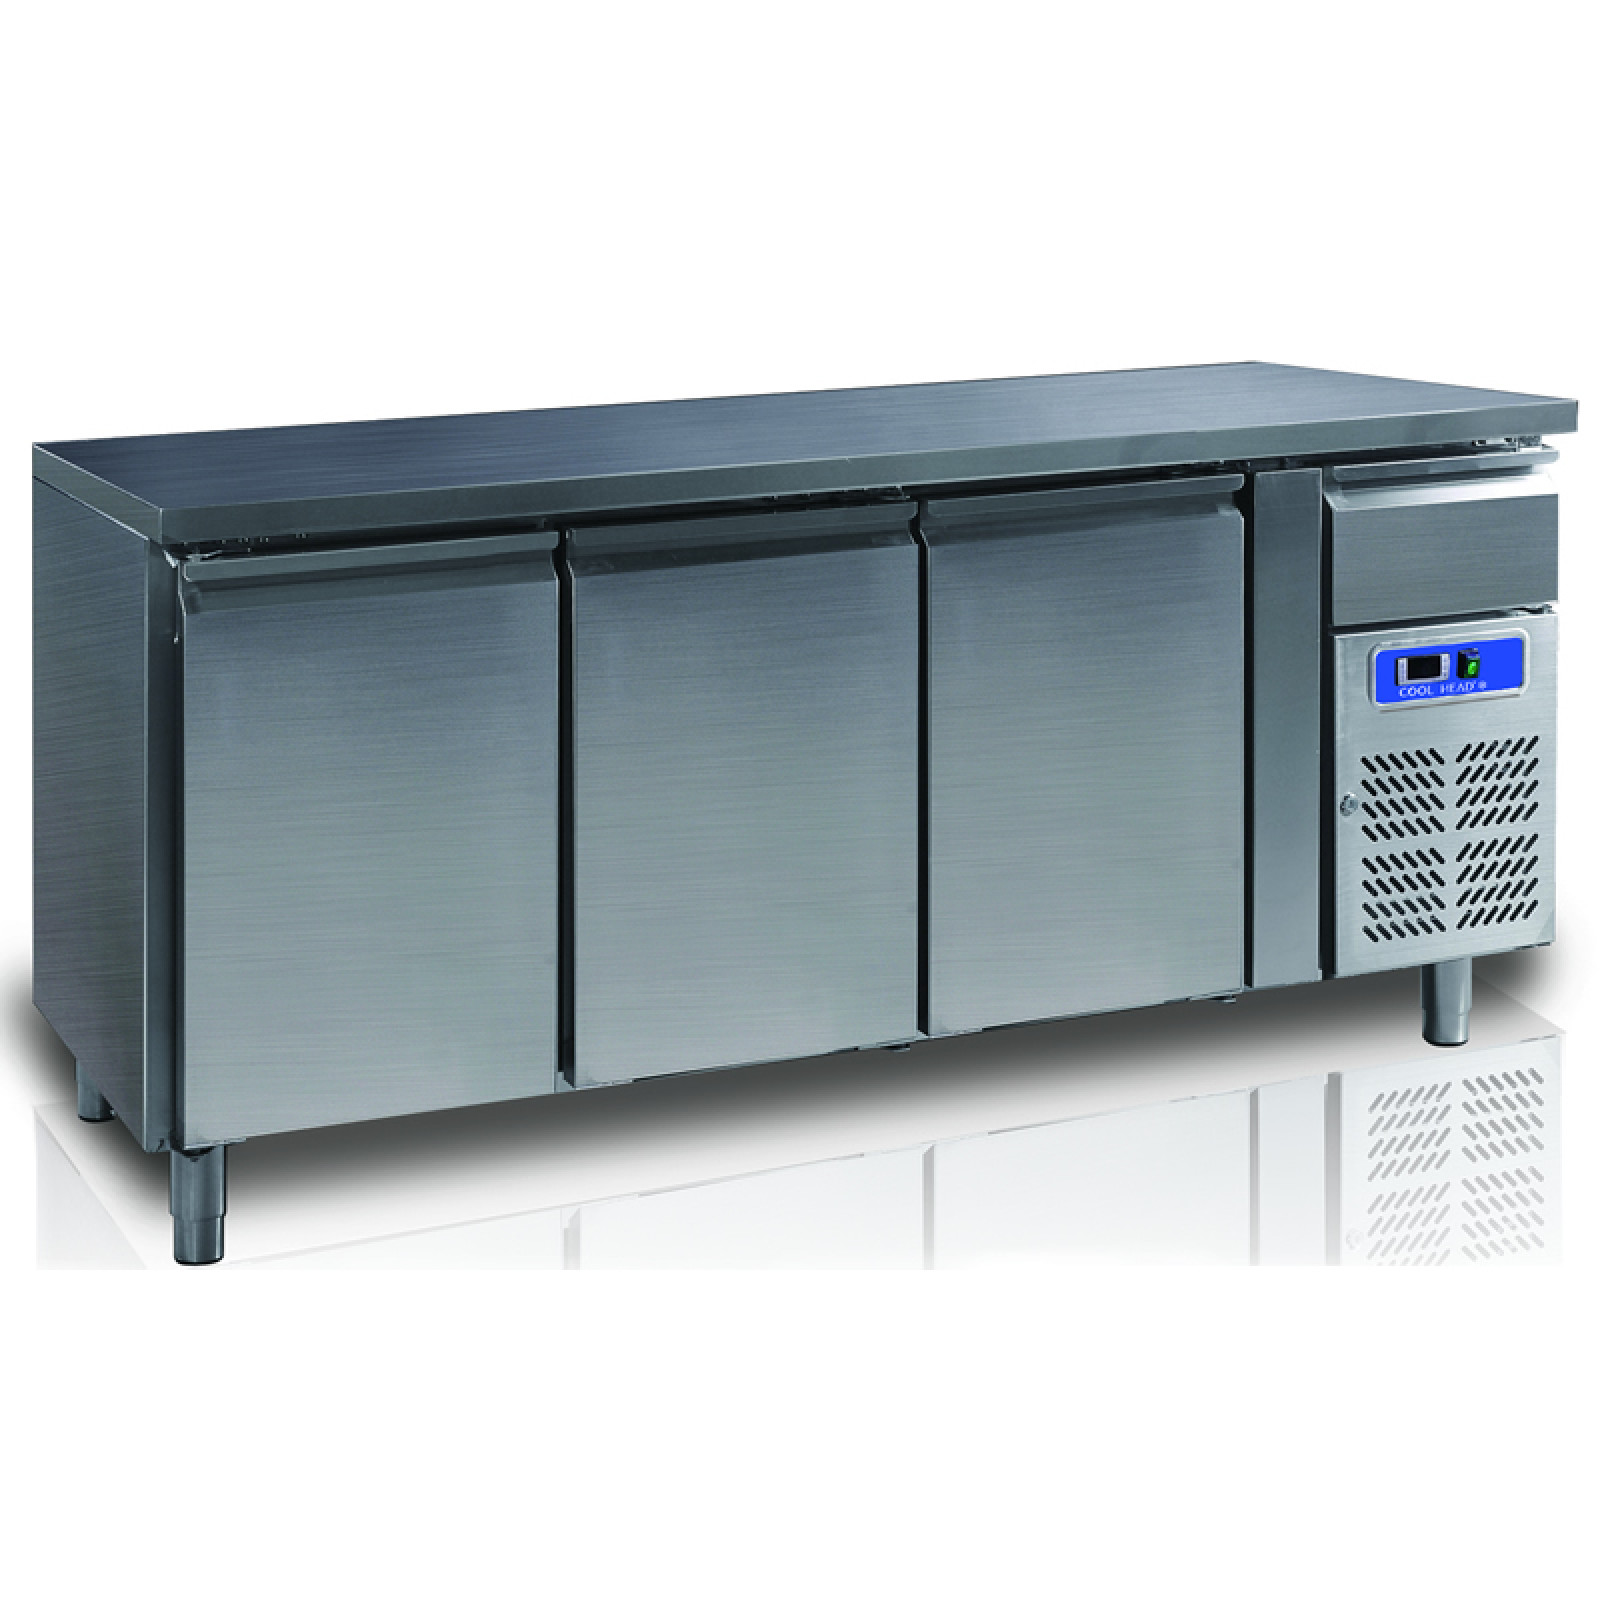 Counter freezer "Coolhead" GN3100BT